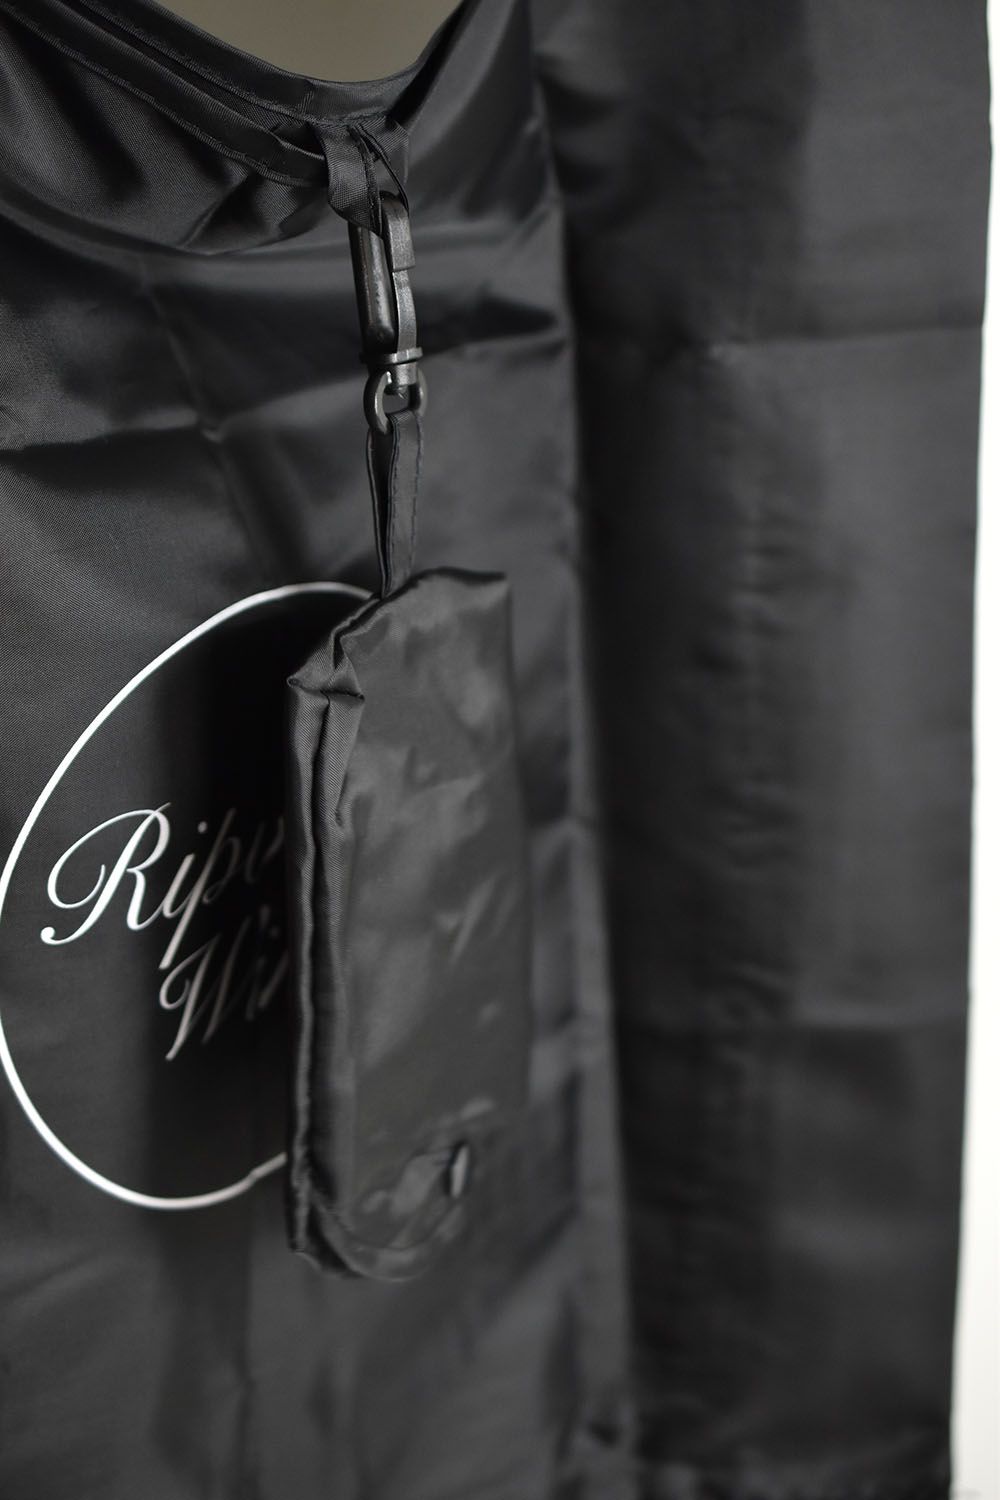 Eco Bag"Black"/エコバック"ブラック"(RIPVANWINKLEの商品お買い上げでプレゼント)